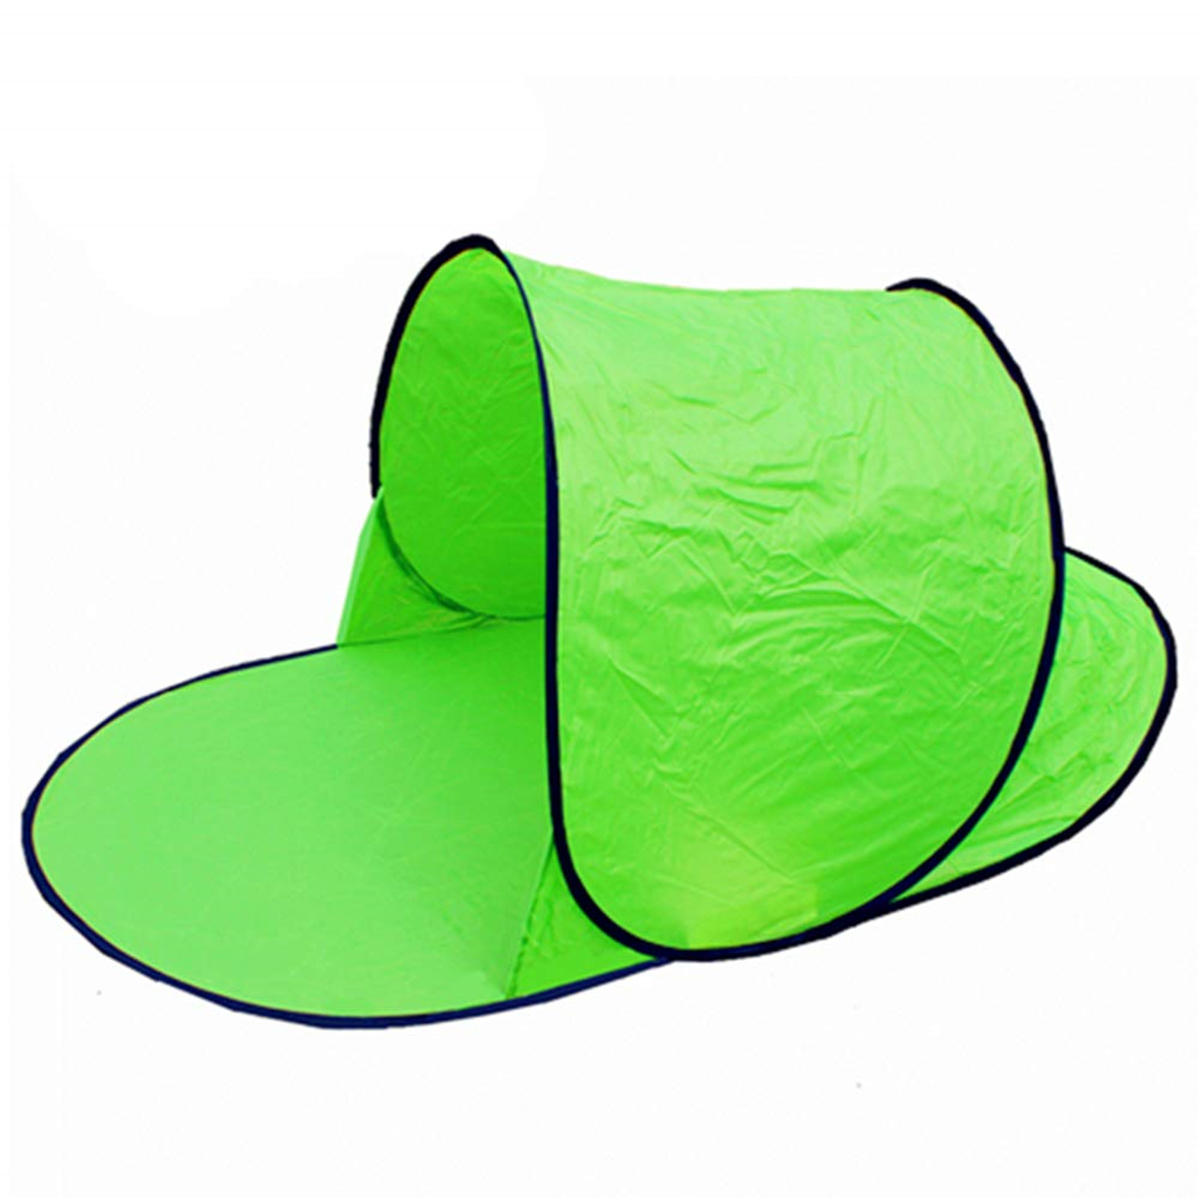 Tenda singola impermeabile anti-UV per campeggio, spiaggia e riposo all'aperto.